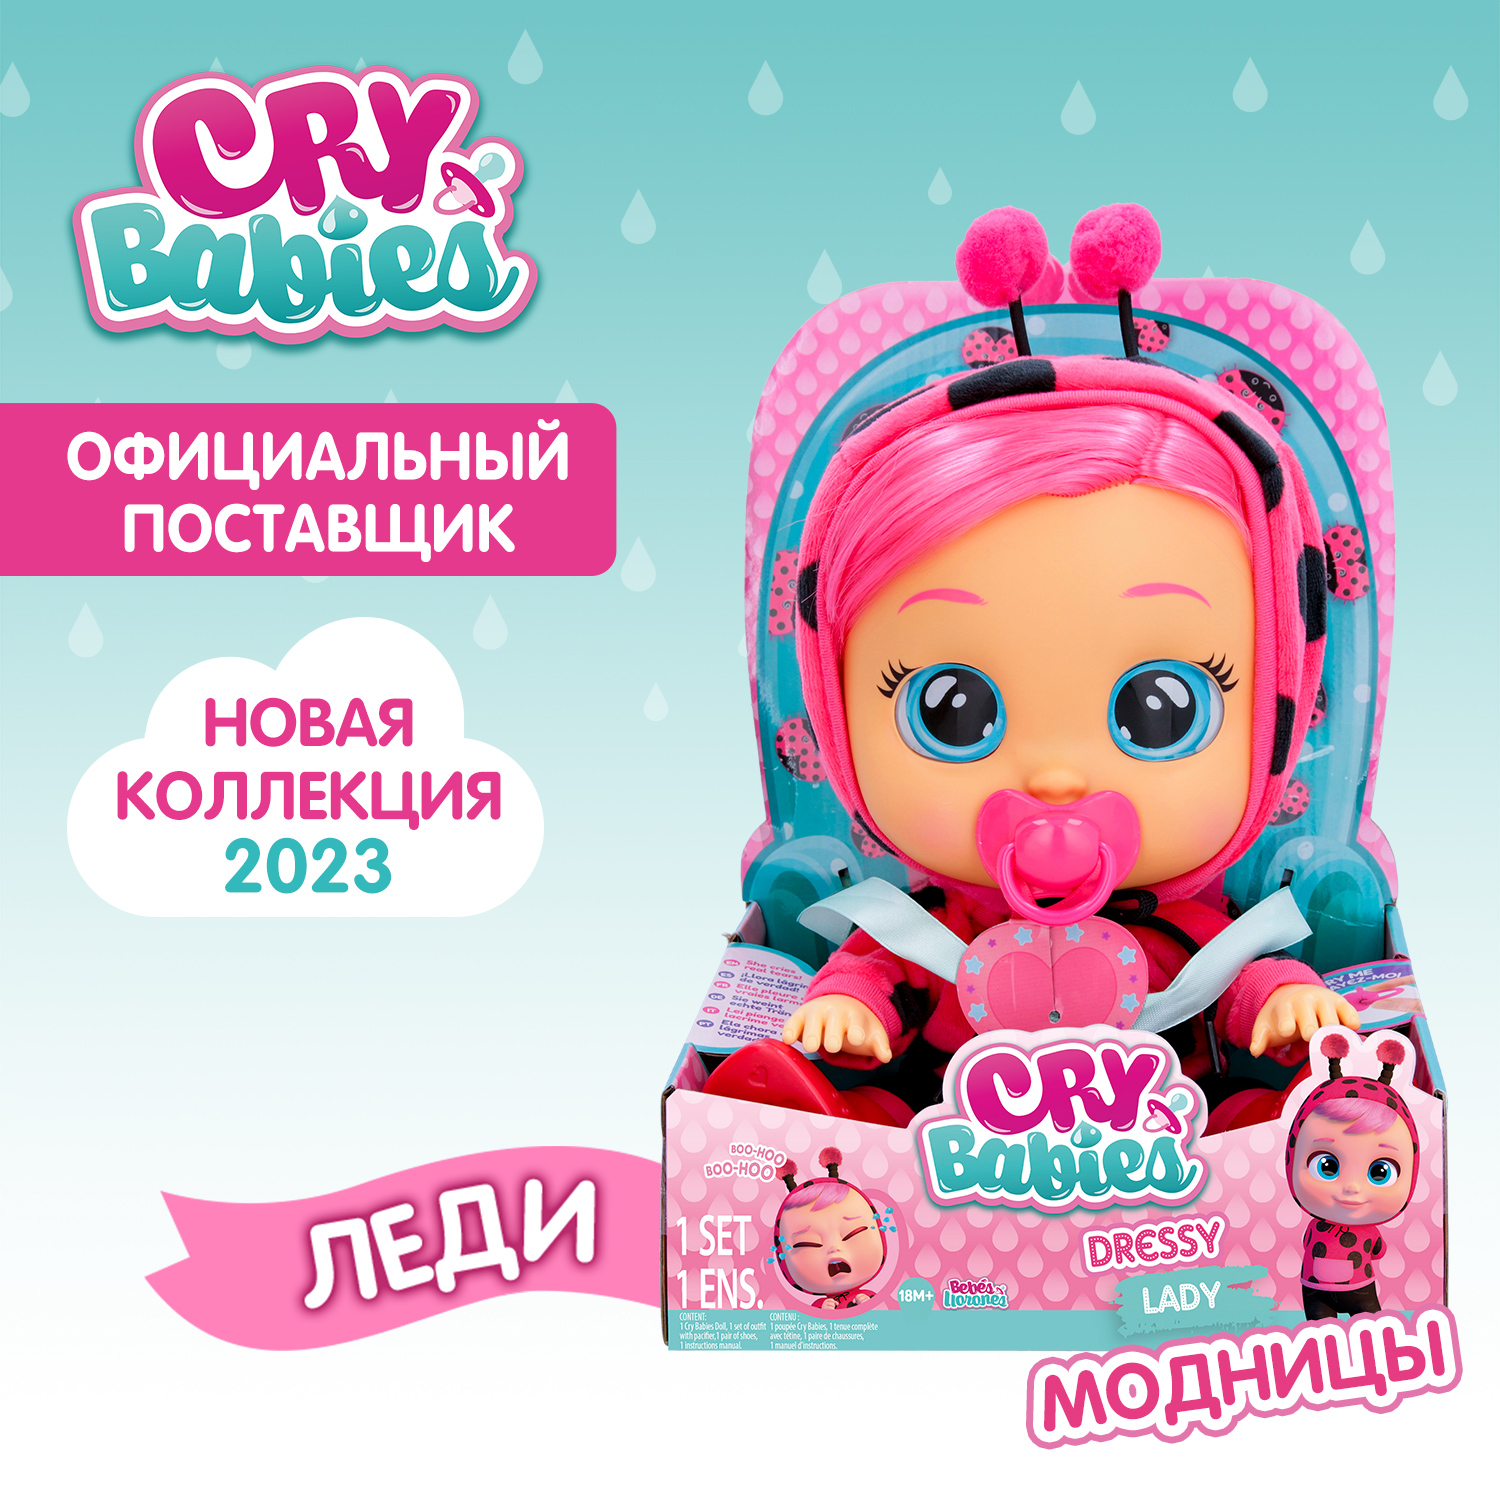 Кукла Cry Babies Леди Модница, интерактивная, плачущая, 40885 кукла cry babies кони модница интерактивная плачущая 40883